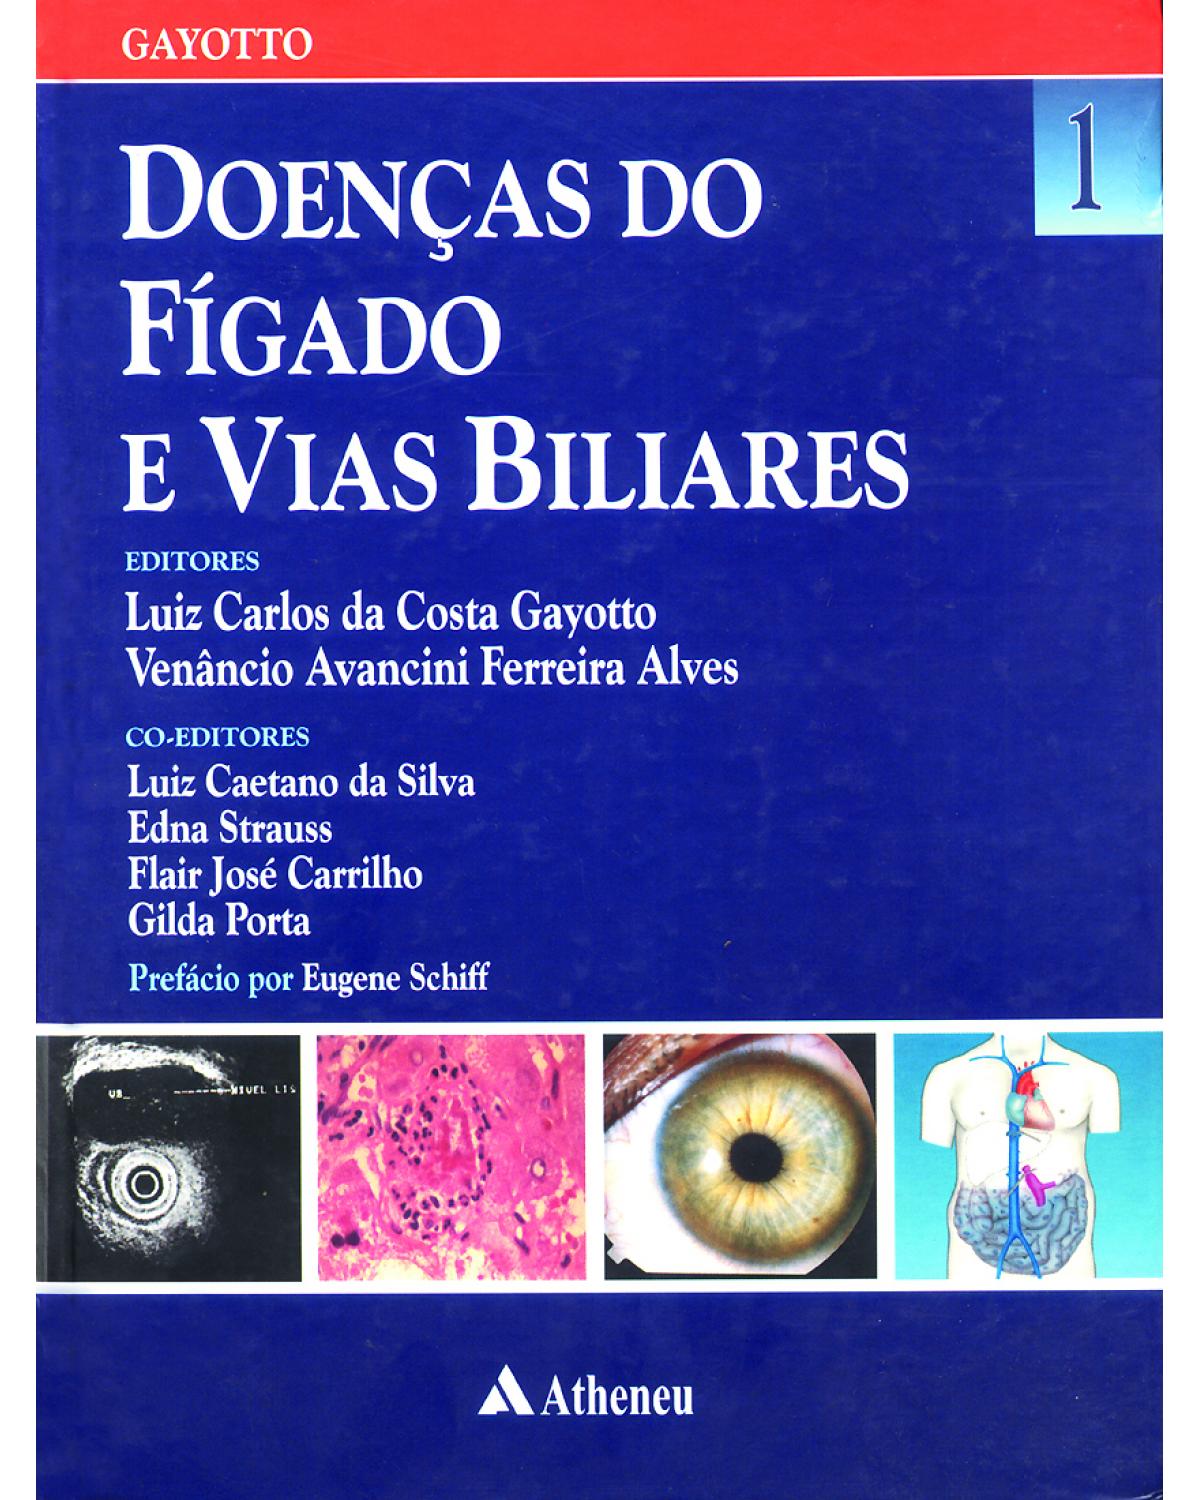 Doenças do fígado e vias biliares - Volume 1:  - 1ª Edição | 2001